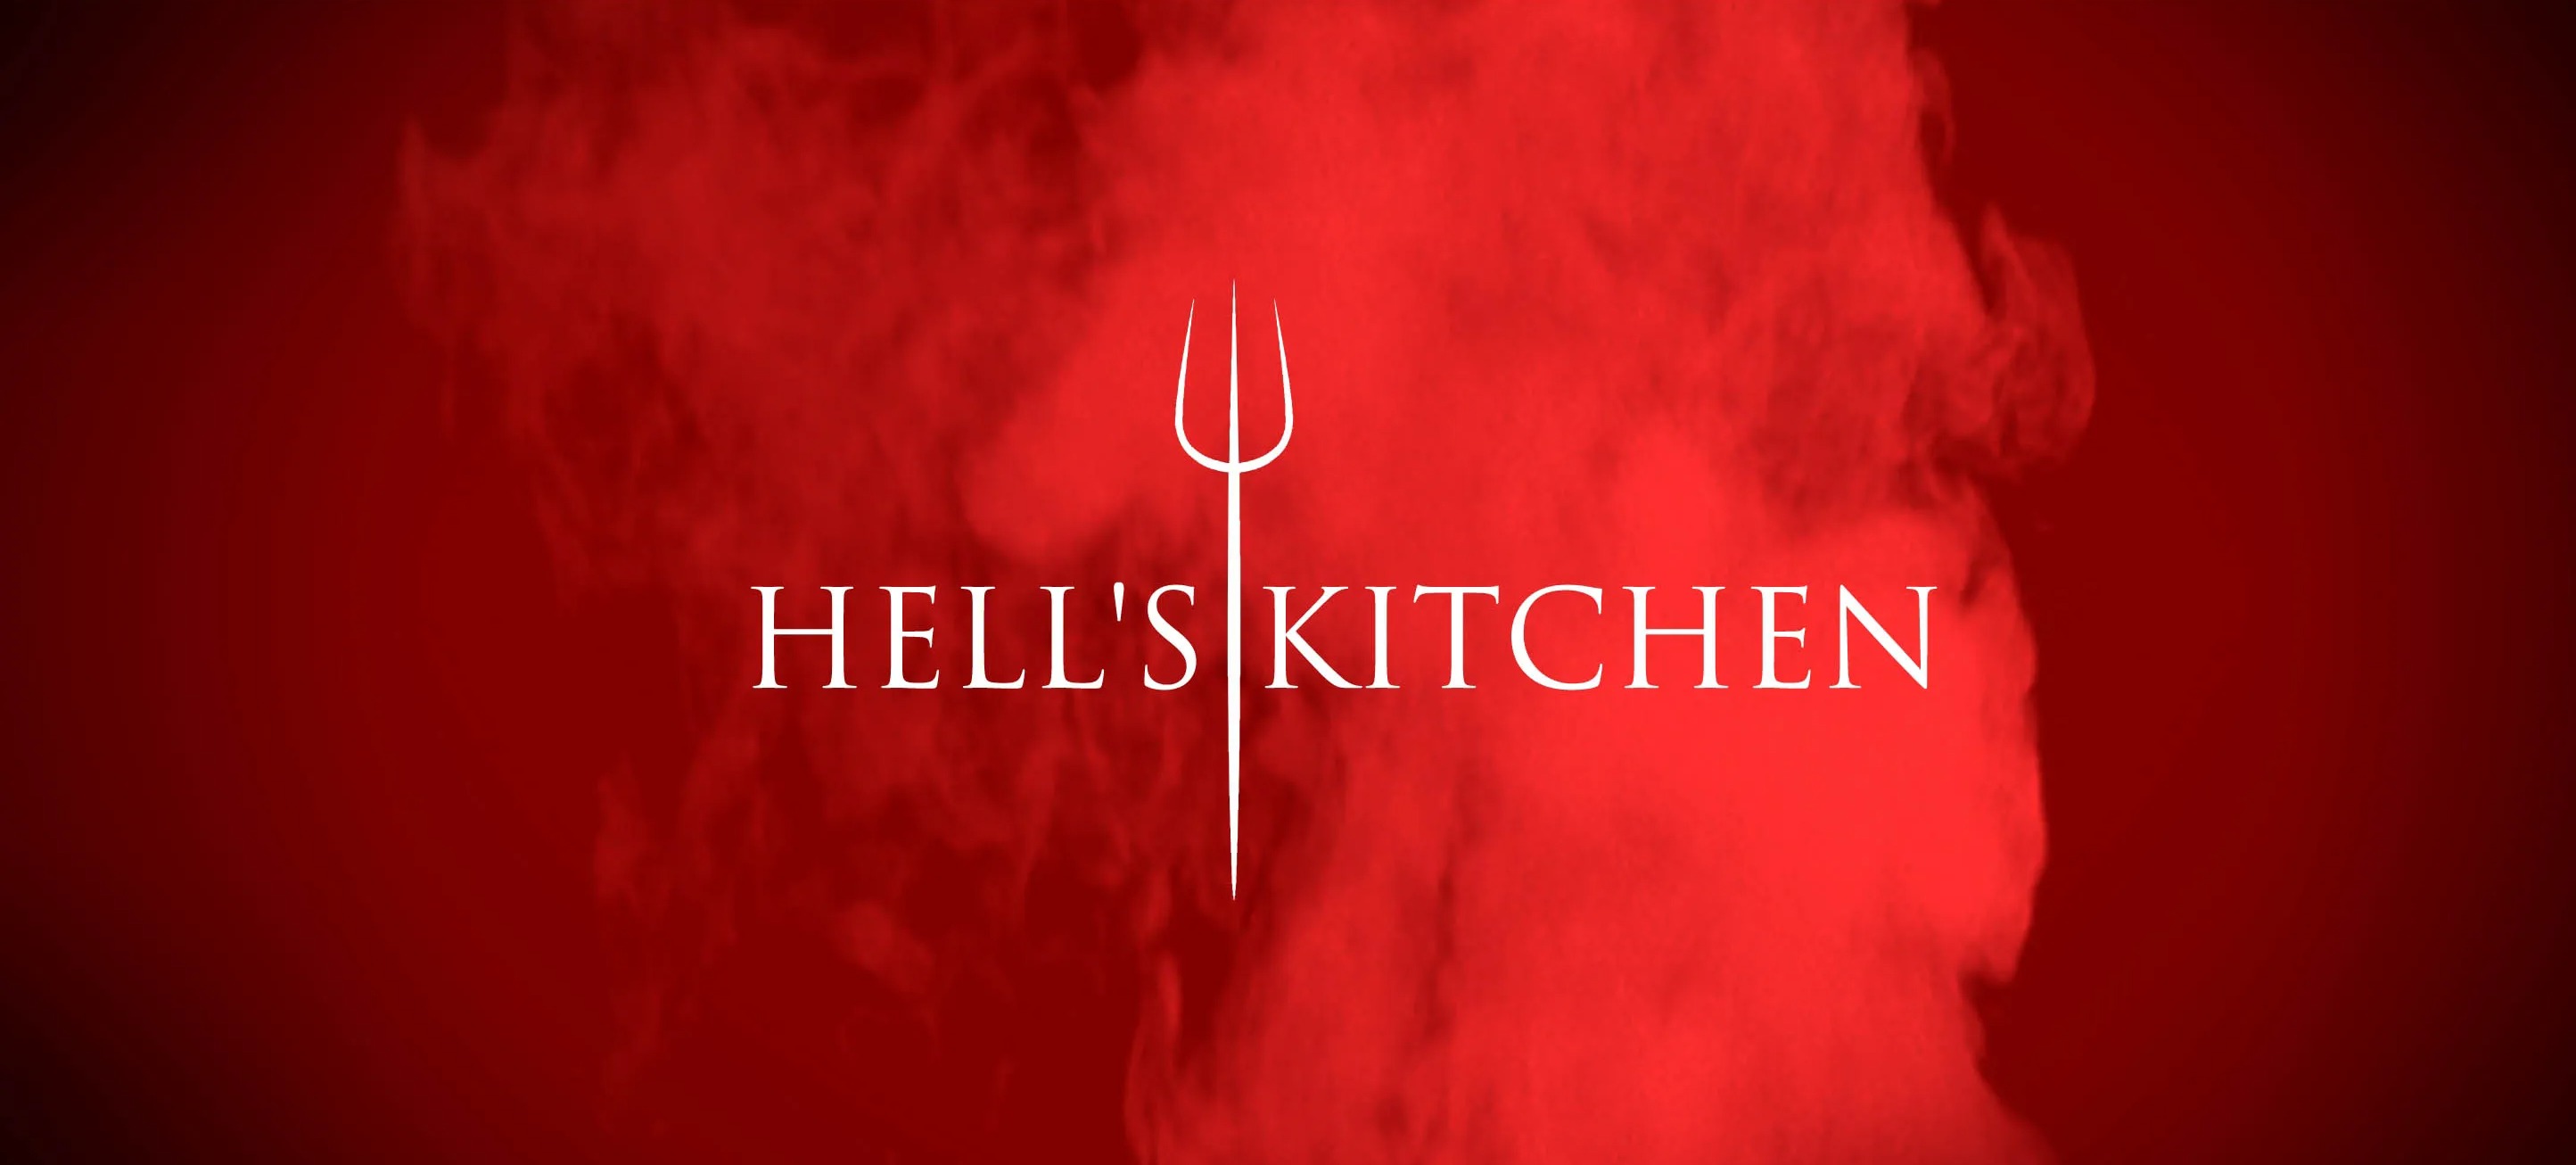 Hell's Kitchen wurde erstmals vor 20 Jahren ausgestrahlt, die letzte Serie wurde 2009 in Großbritannien gezeigt